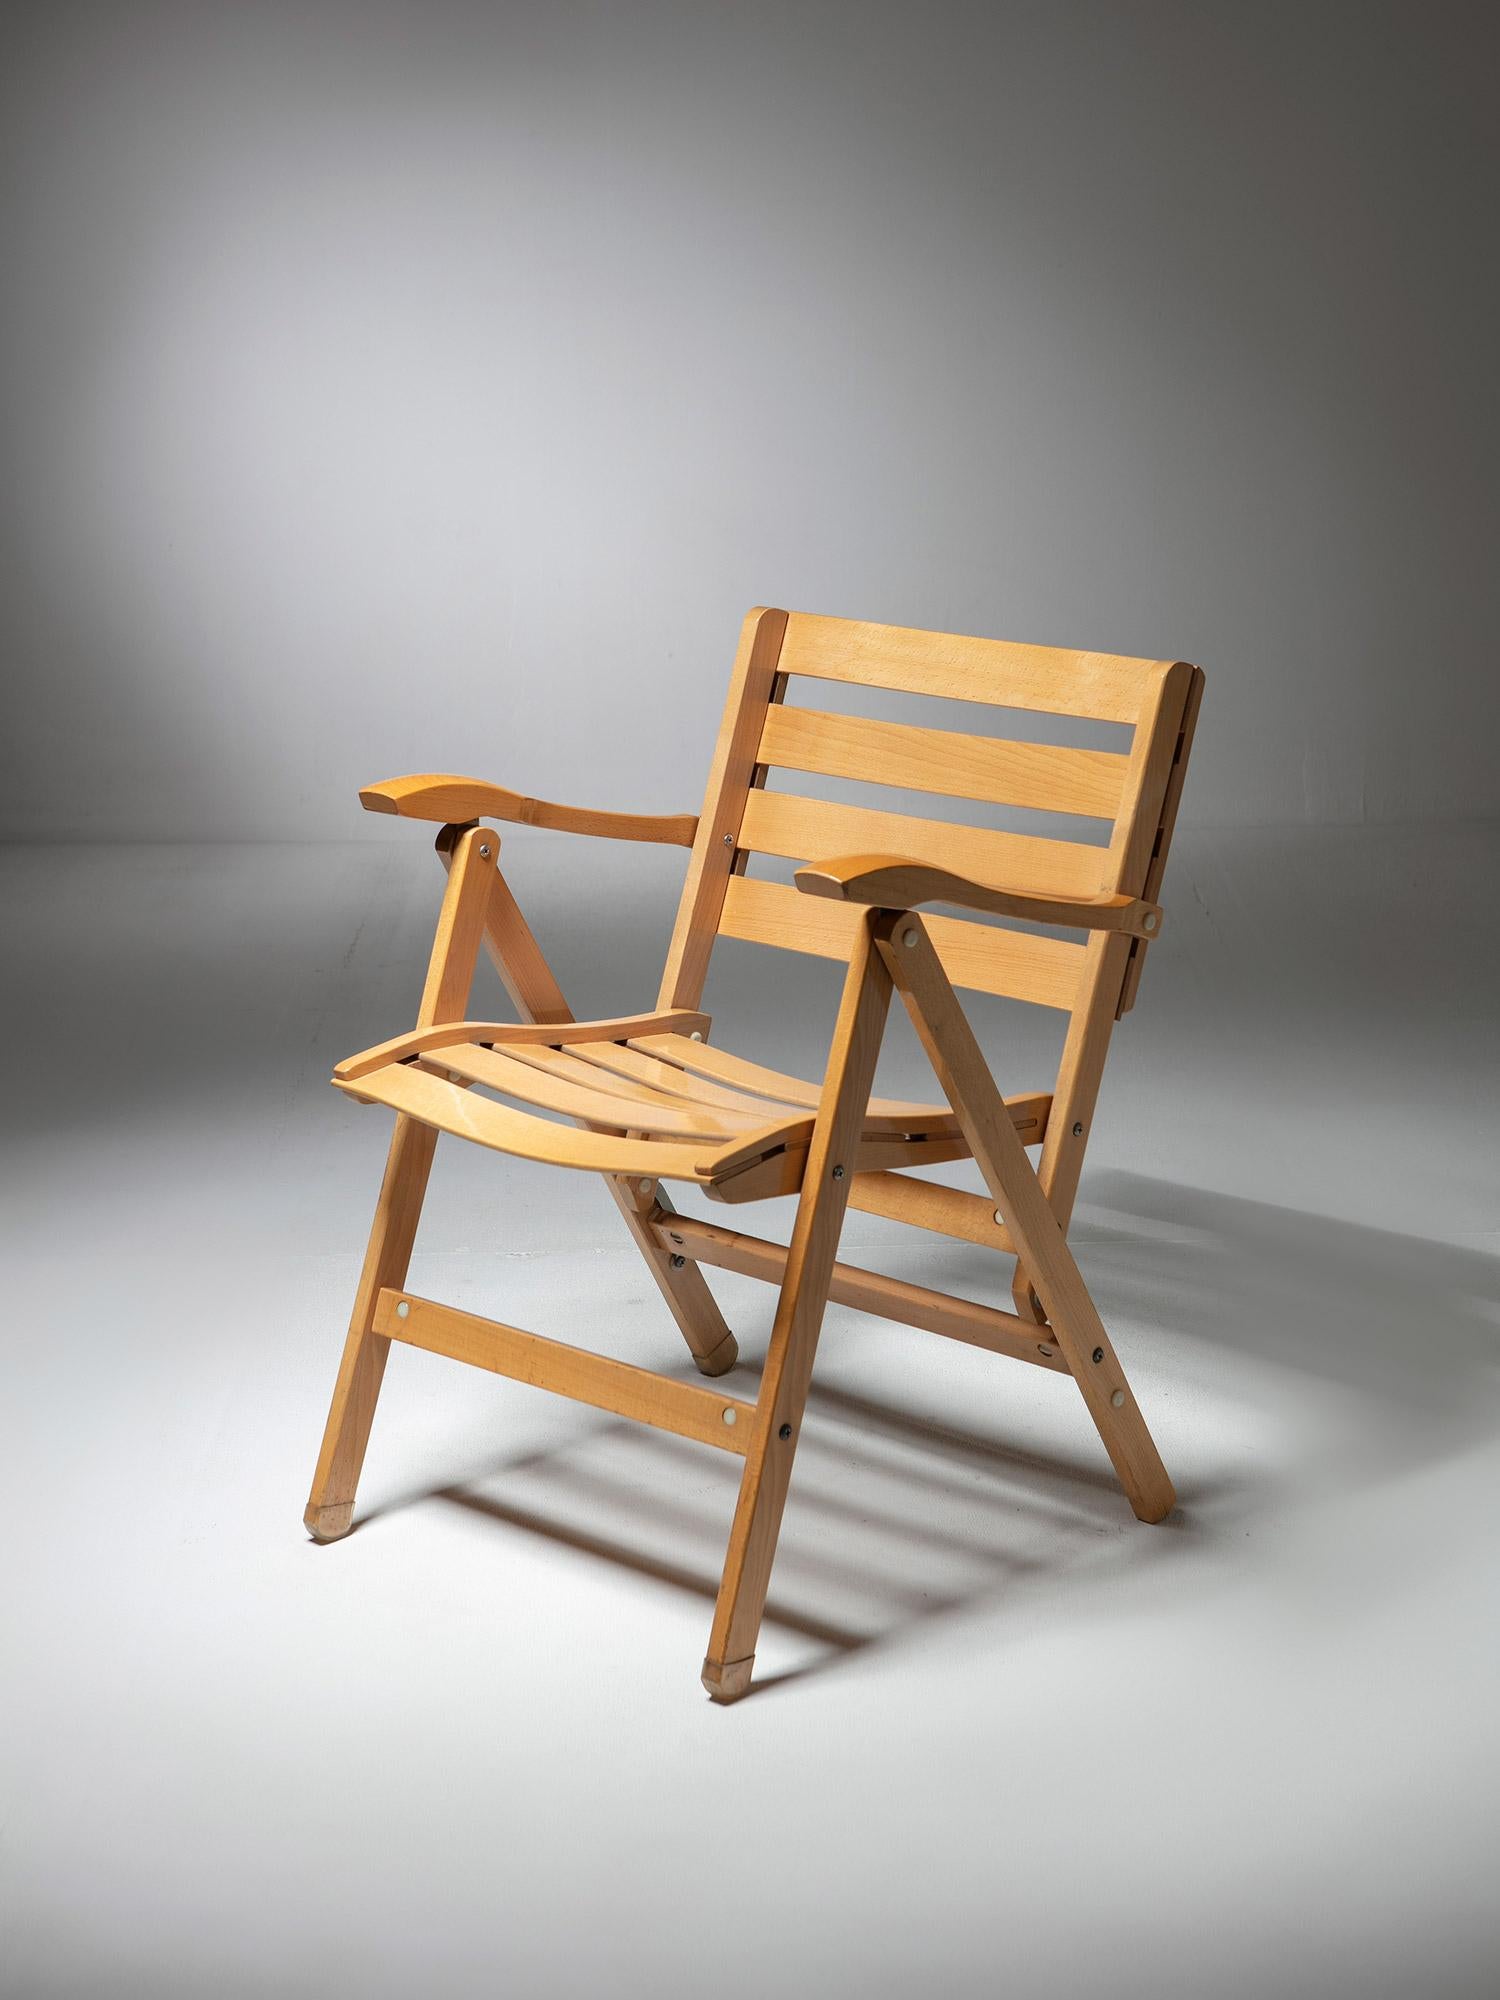 Ensemble de six fauteuils pliants de Carlo Hauner pour Foldes.
Des sièges compacts et extrêmement confortables avec des connexions visuelles avec les productions Albini et Zanuso.
Des échantillons originaux de coussins mobiles sont disponibles.